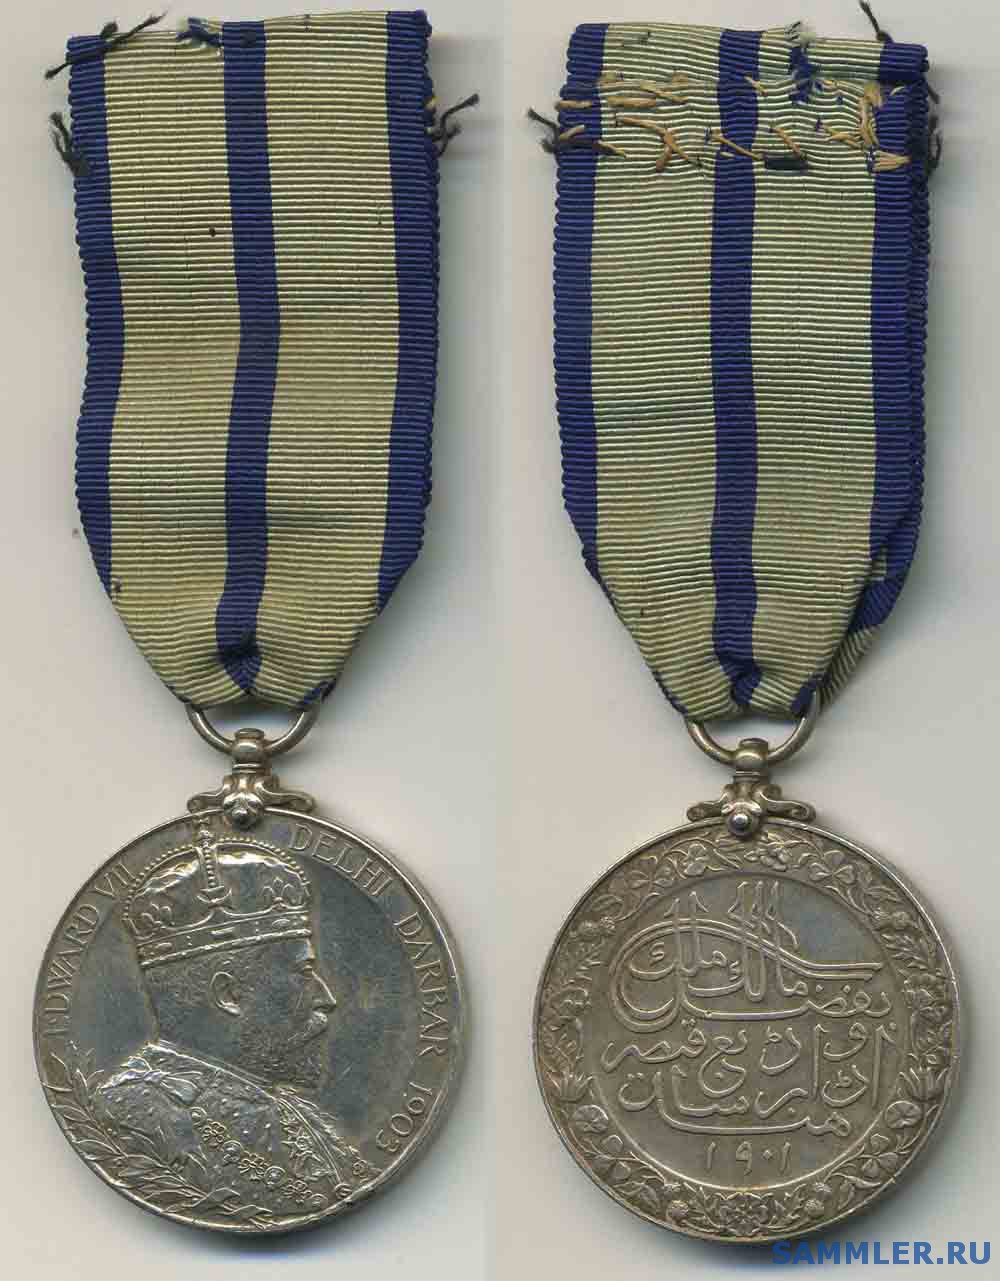 Delhi_Darbar_1903_Medal.jpg